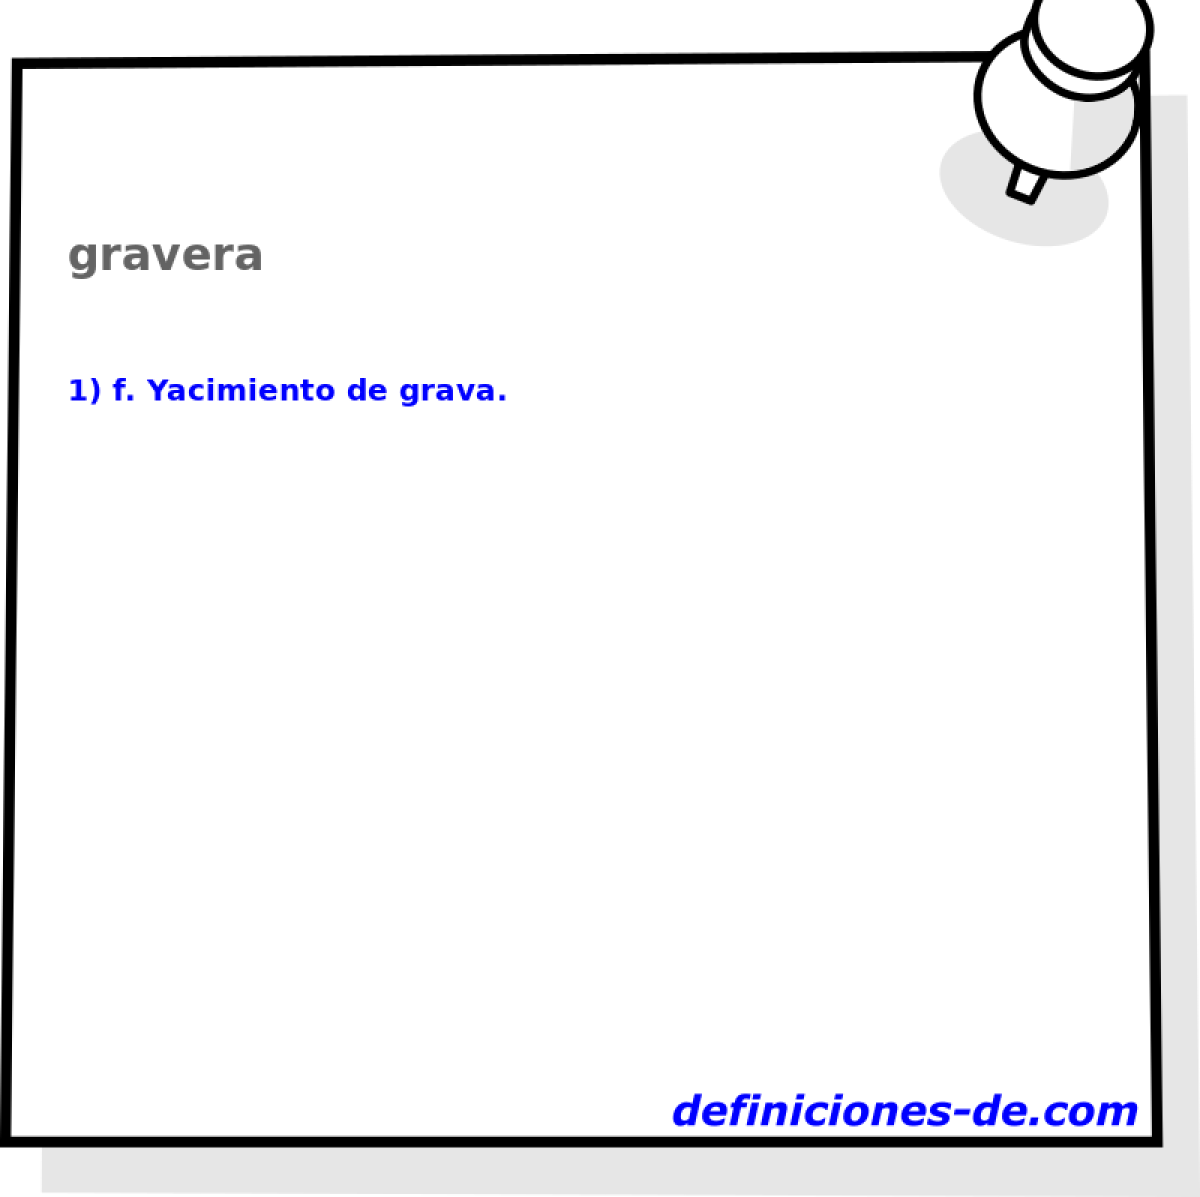 gravera 